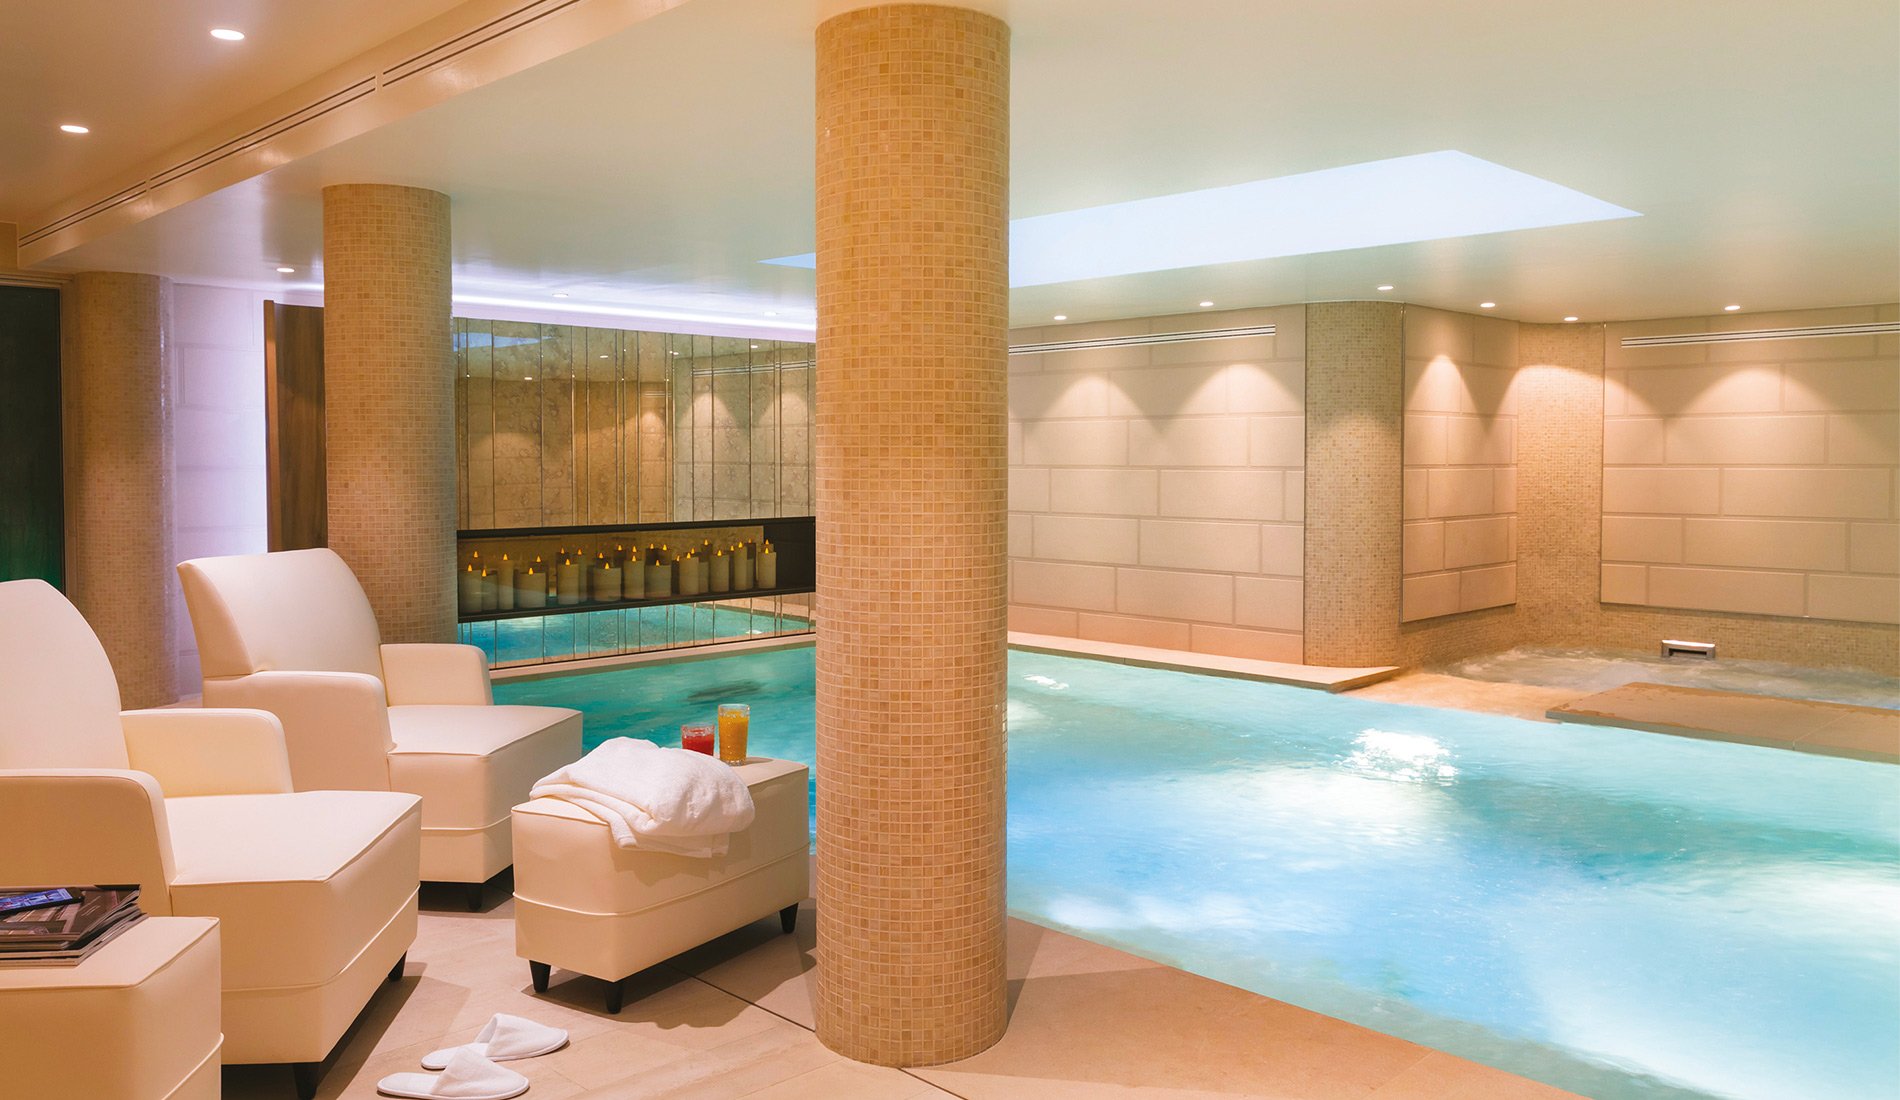 Hôtel de luxe - Maison Albar Hotels Le Pont-Neuf - 5 étoiles - piscine intérieure